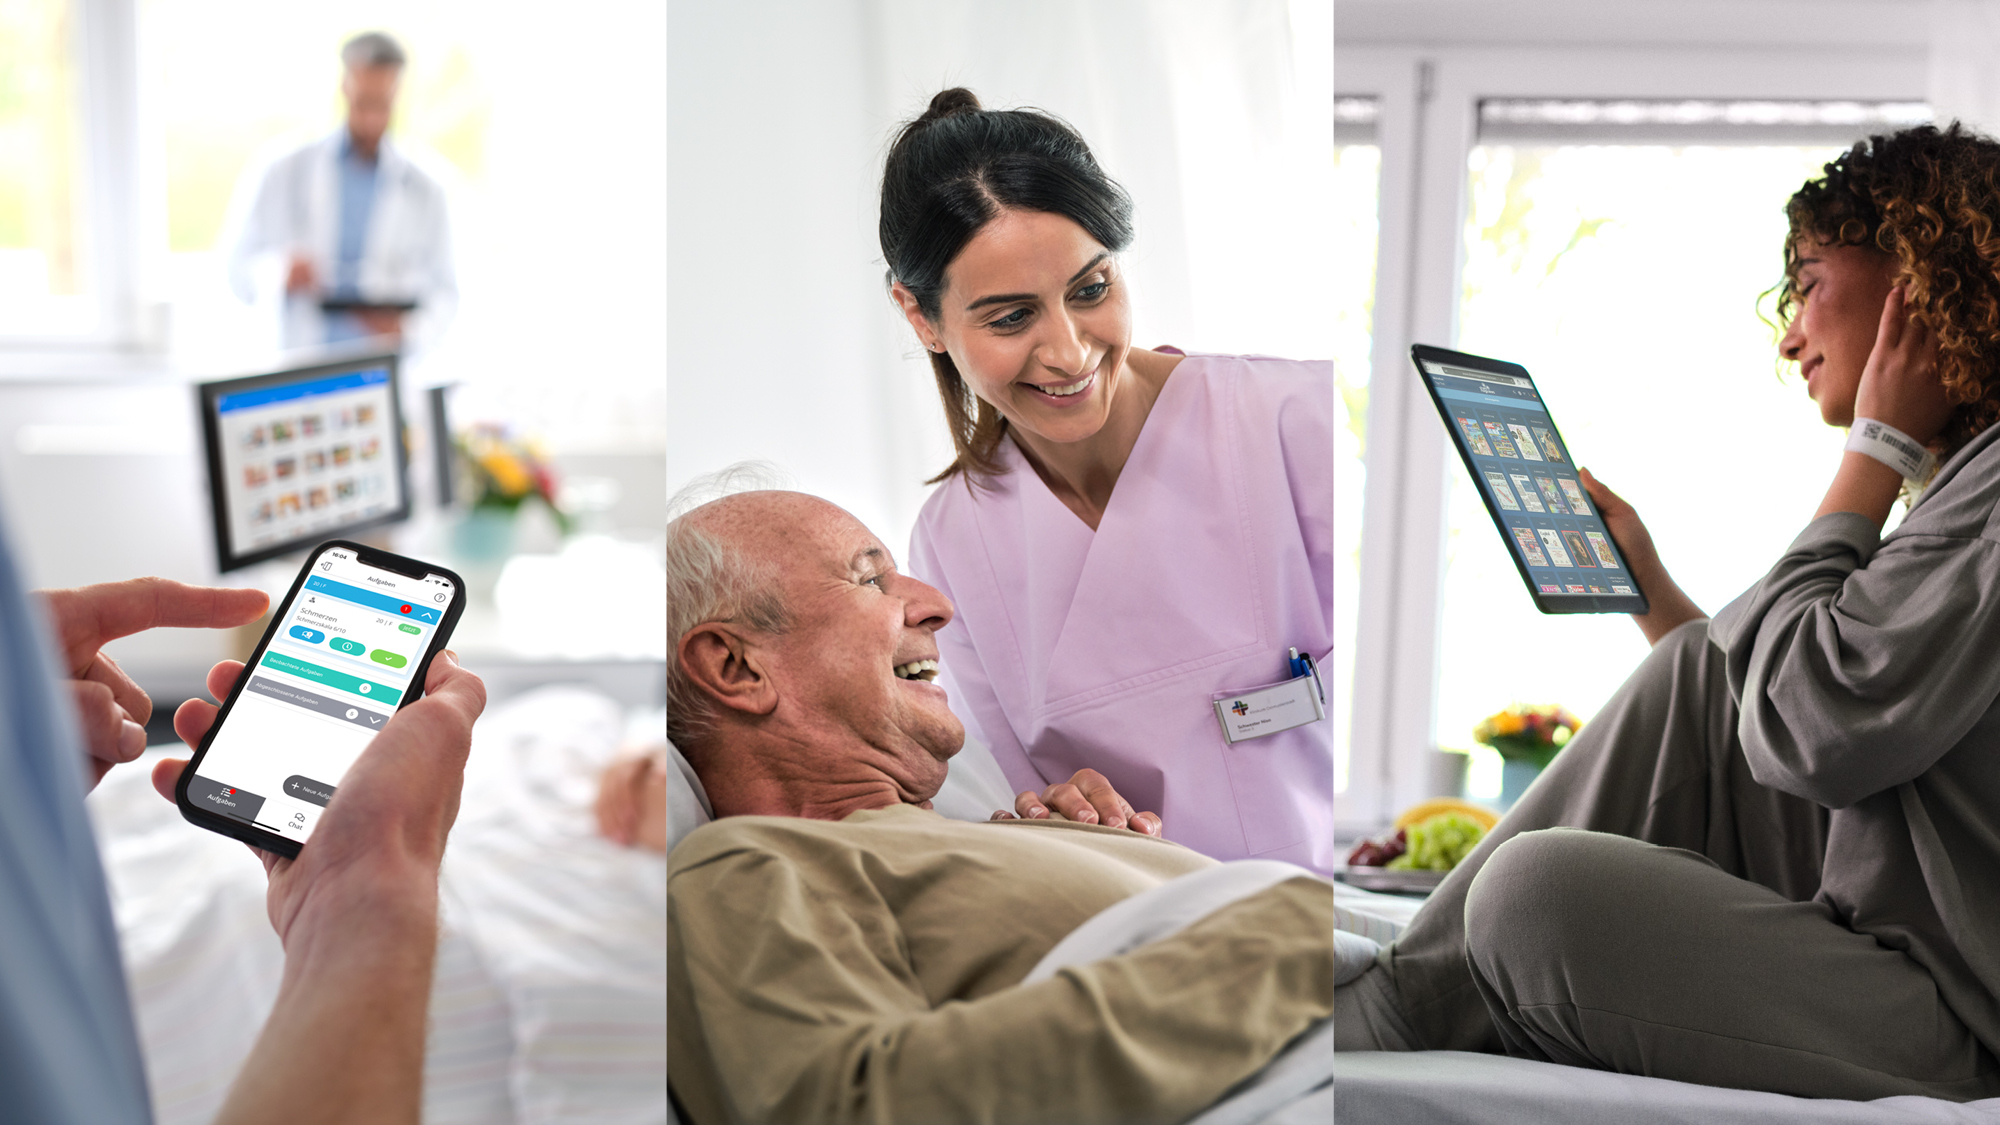 Collage aus drei Bildern: Pfleger bedient den Digitalen Serviceruf auf Smartphone, Pflegerin und Patient lachen, Patientin liest eMagazines von sharemagazines auf iPad